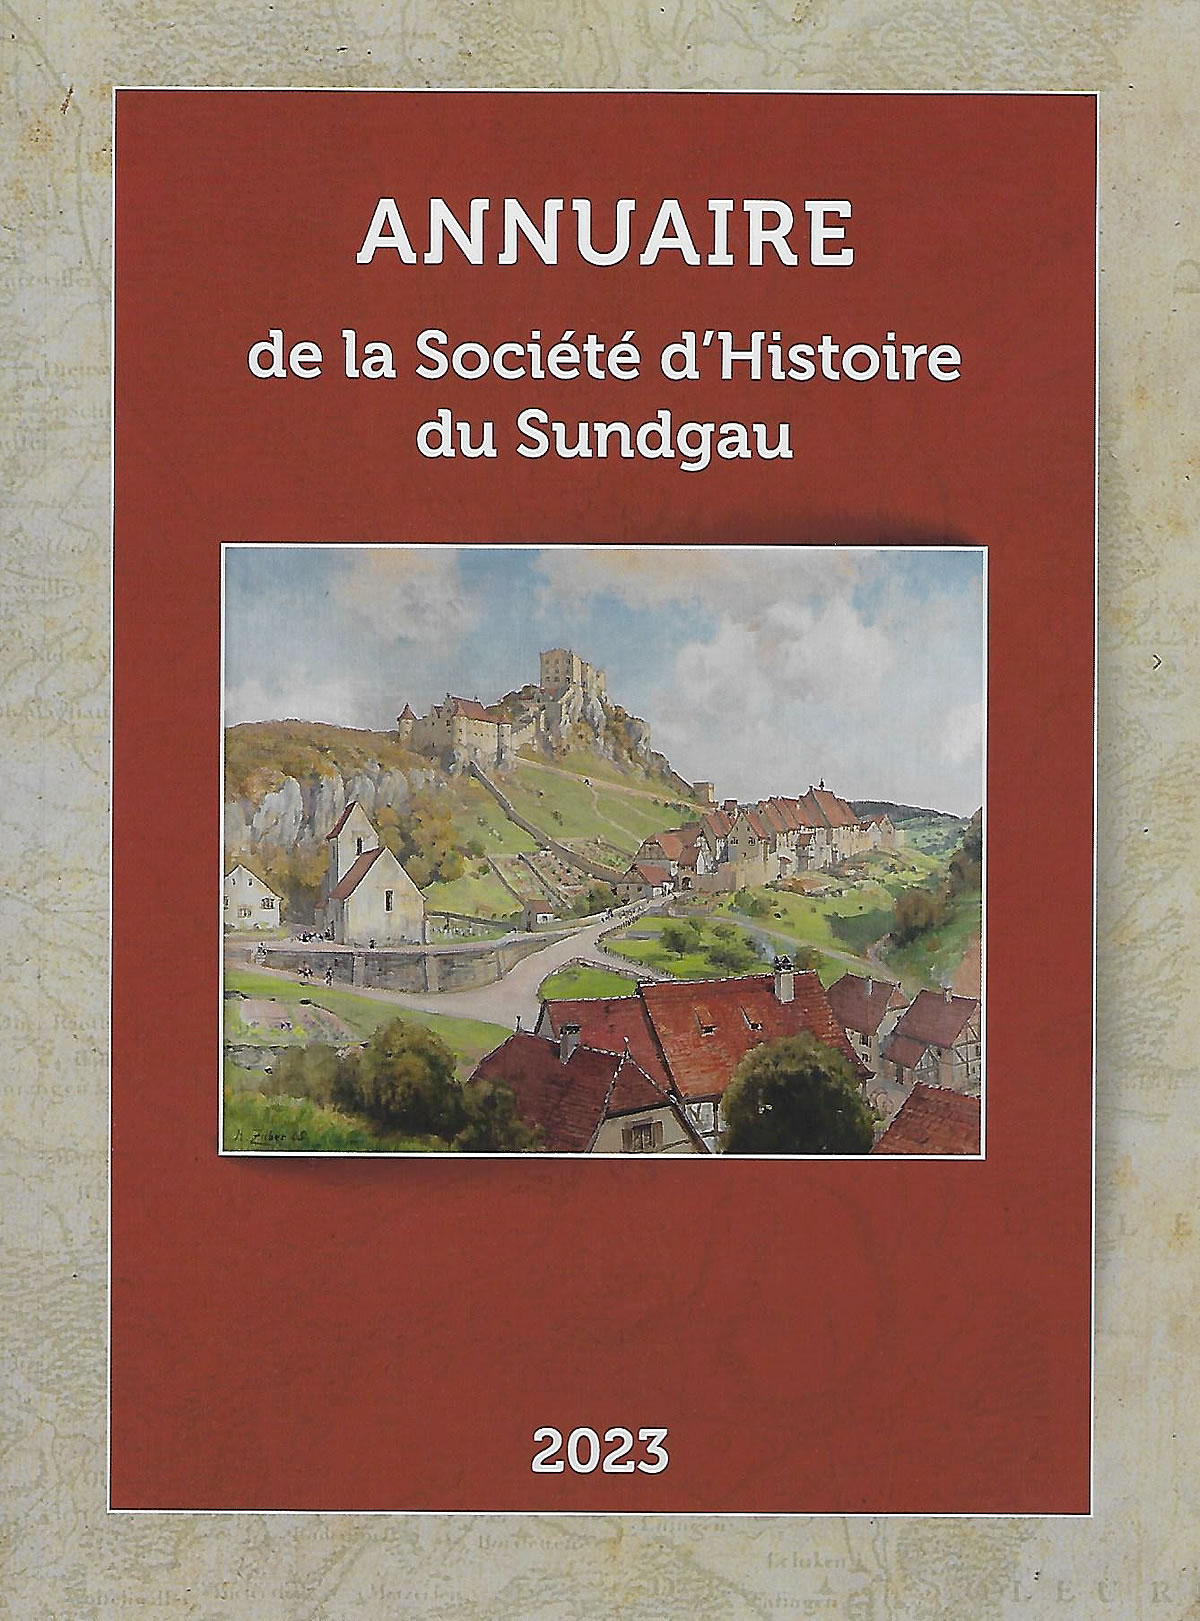 Annuaire de la Société d'Histoire du Sundgau 2023